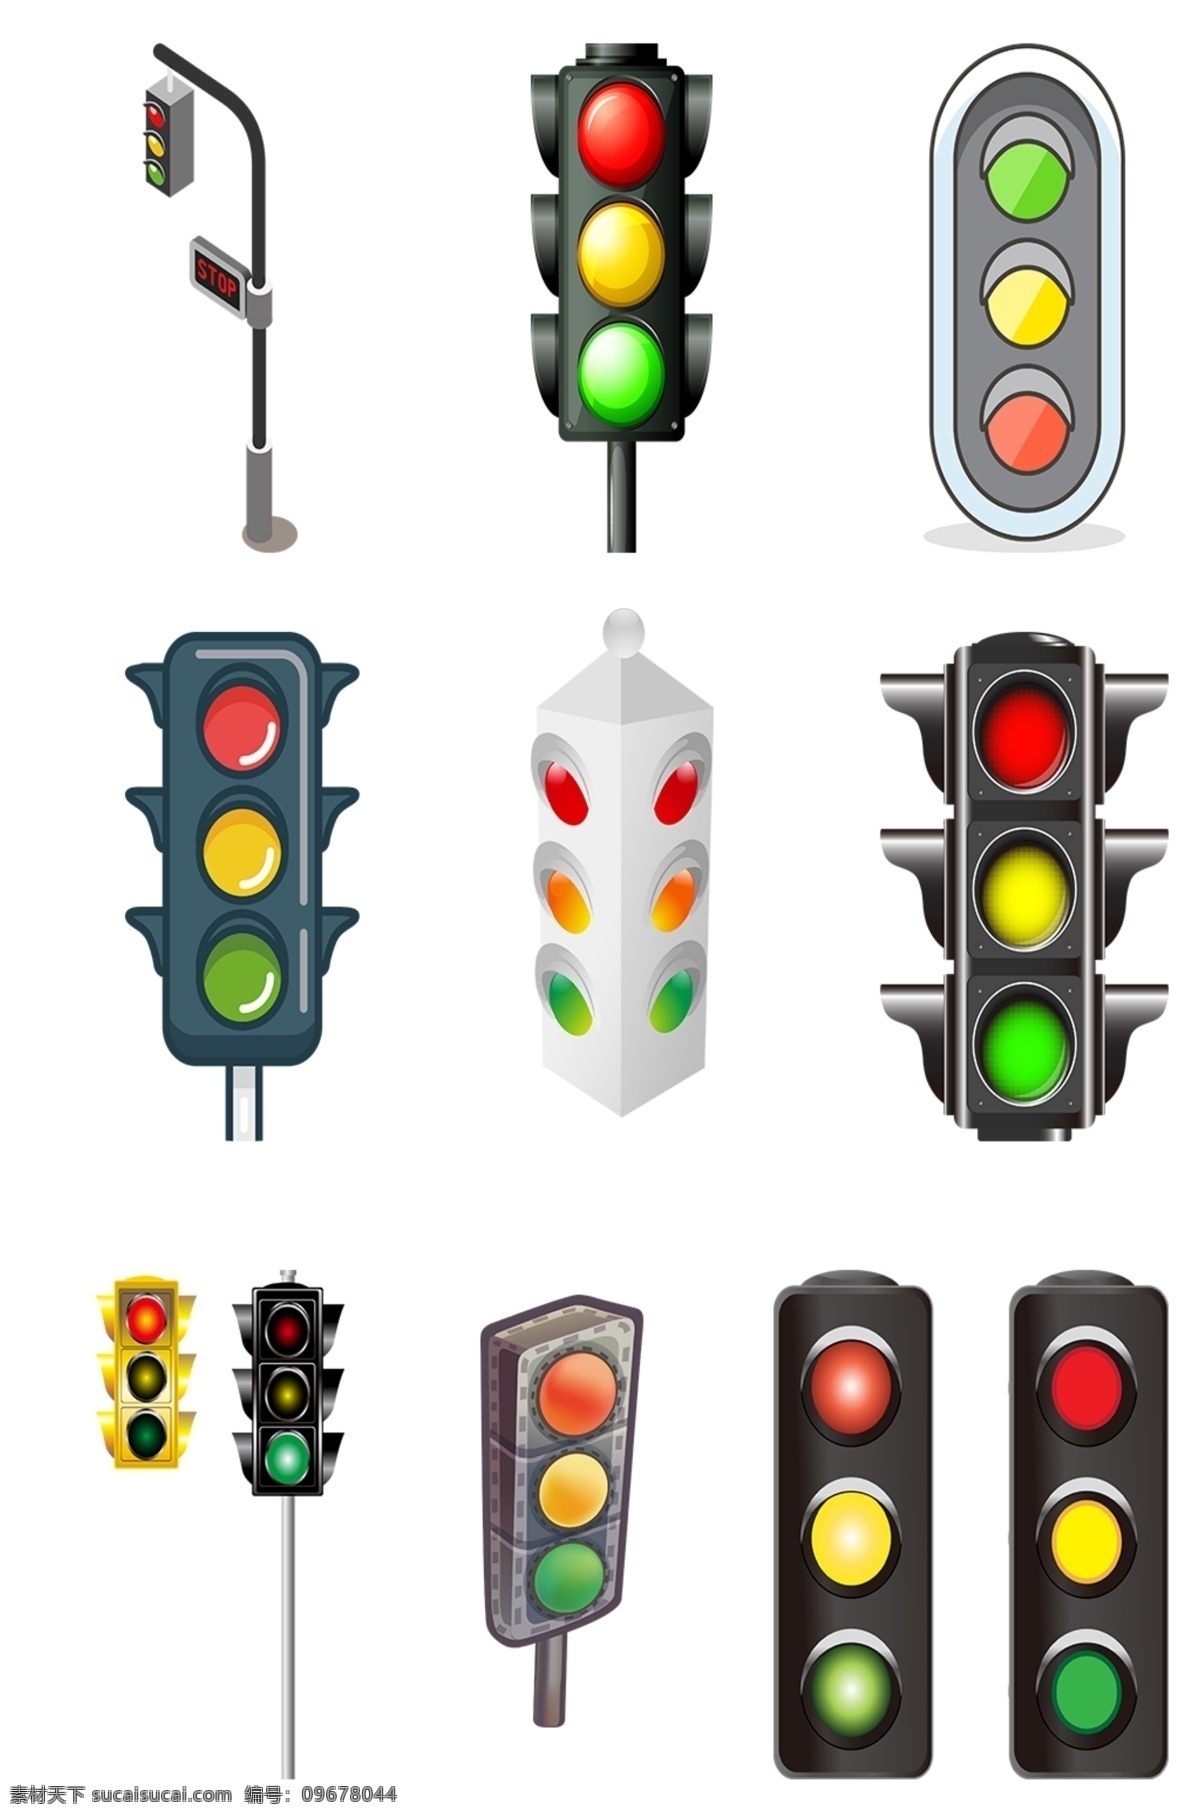 红绿灯 素材图片 安全标志 红绿灯模板 禁止 交通 卡通红绿灯 红绿灯大全 红绿灯素材 红绿灯元素 红绿灯集合 红绿灯集锦 元素素材